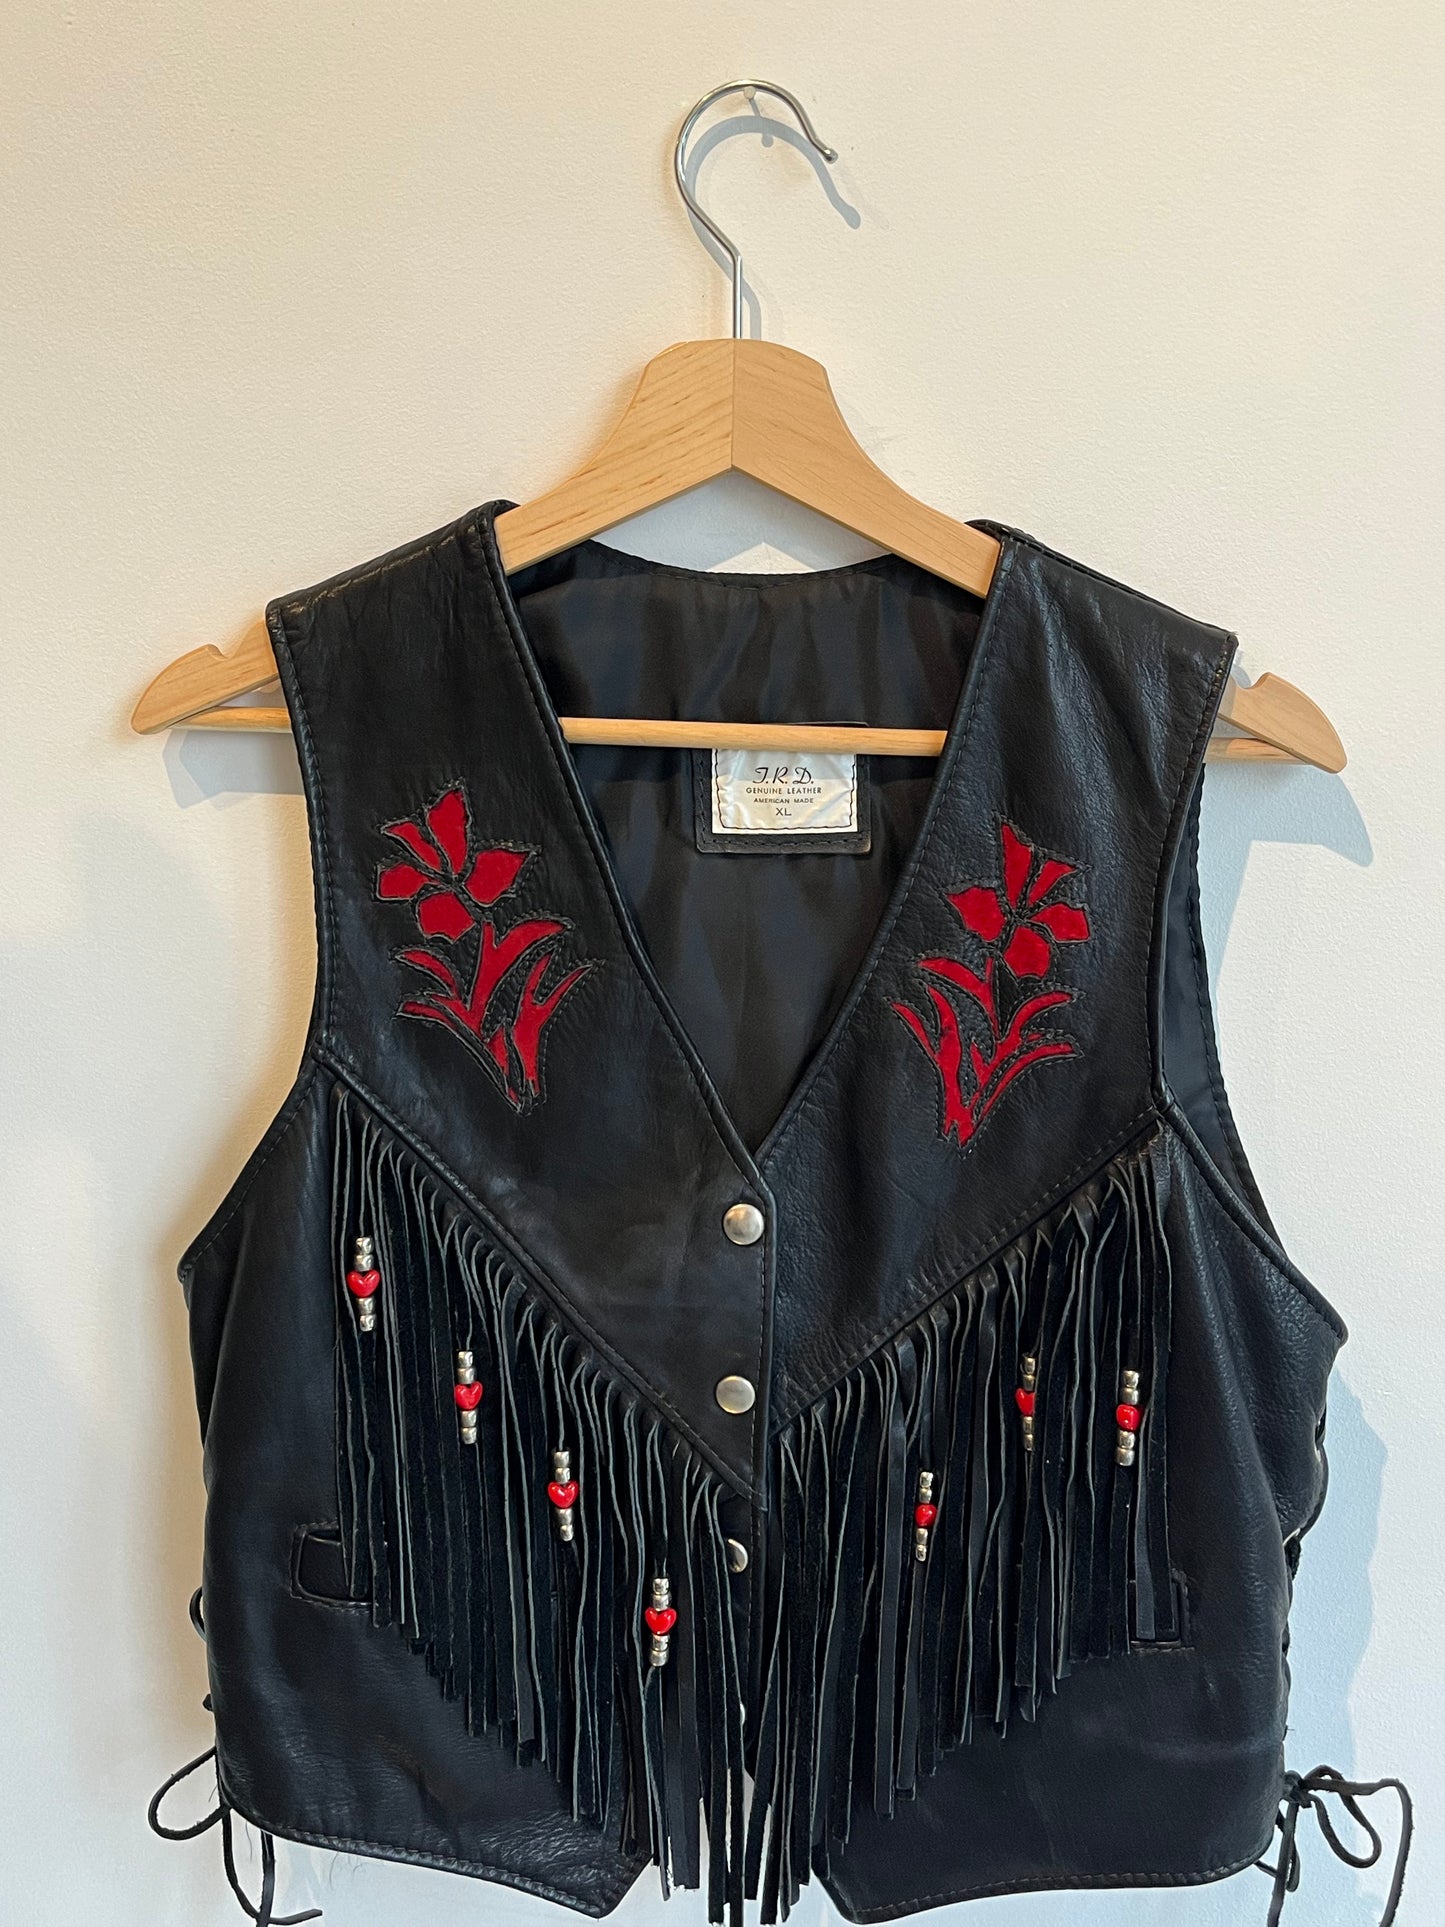 Black & Red Leather Western Vest w Fringe